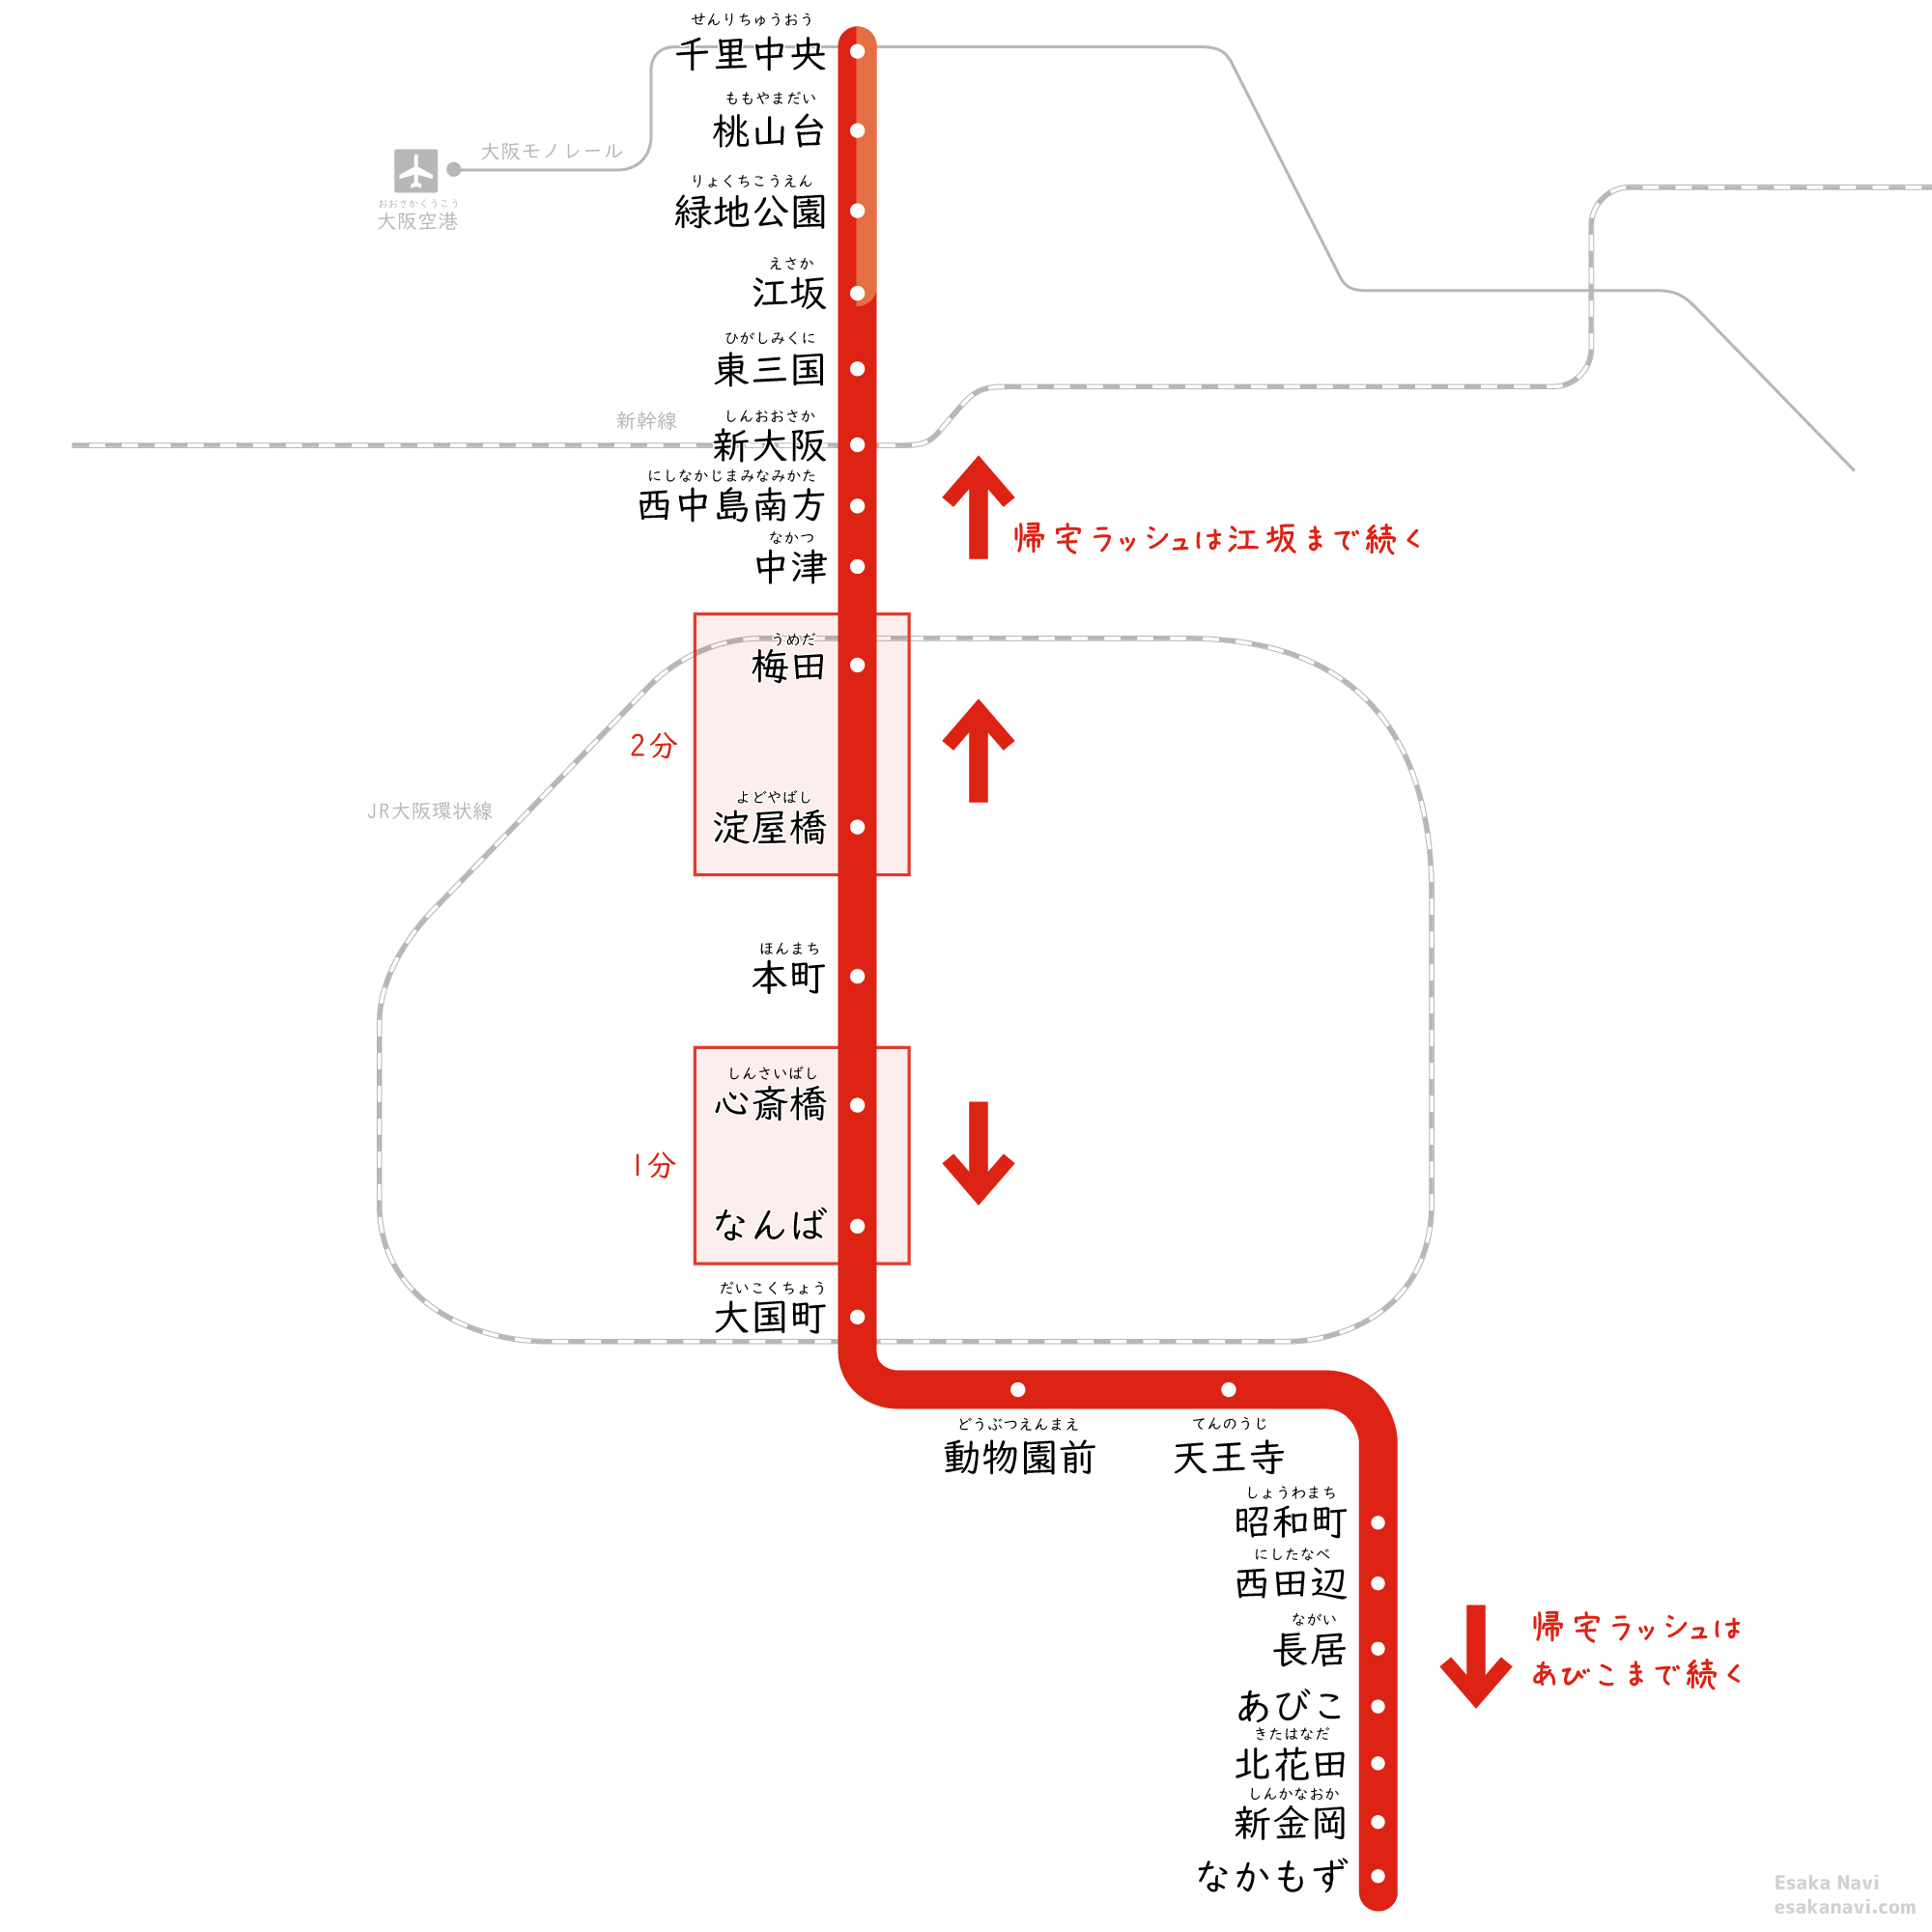 大阪メトロ御堂筋線の通勤ラッシュ 帰宅ラッシュで混雑する駅区間 混雑時間 混雑率 Esaka Navi